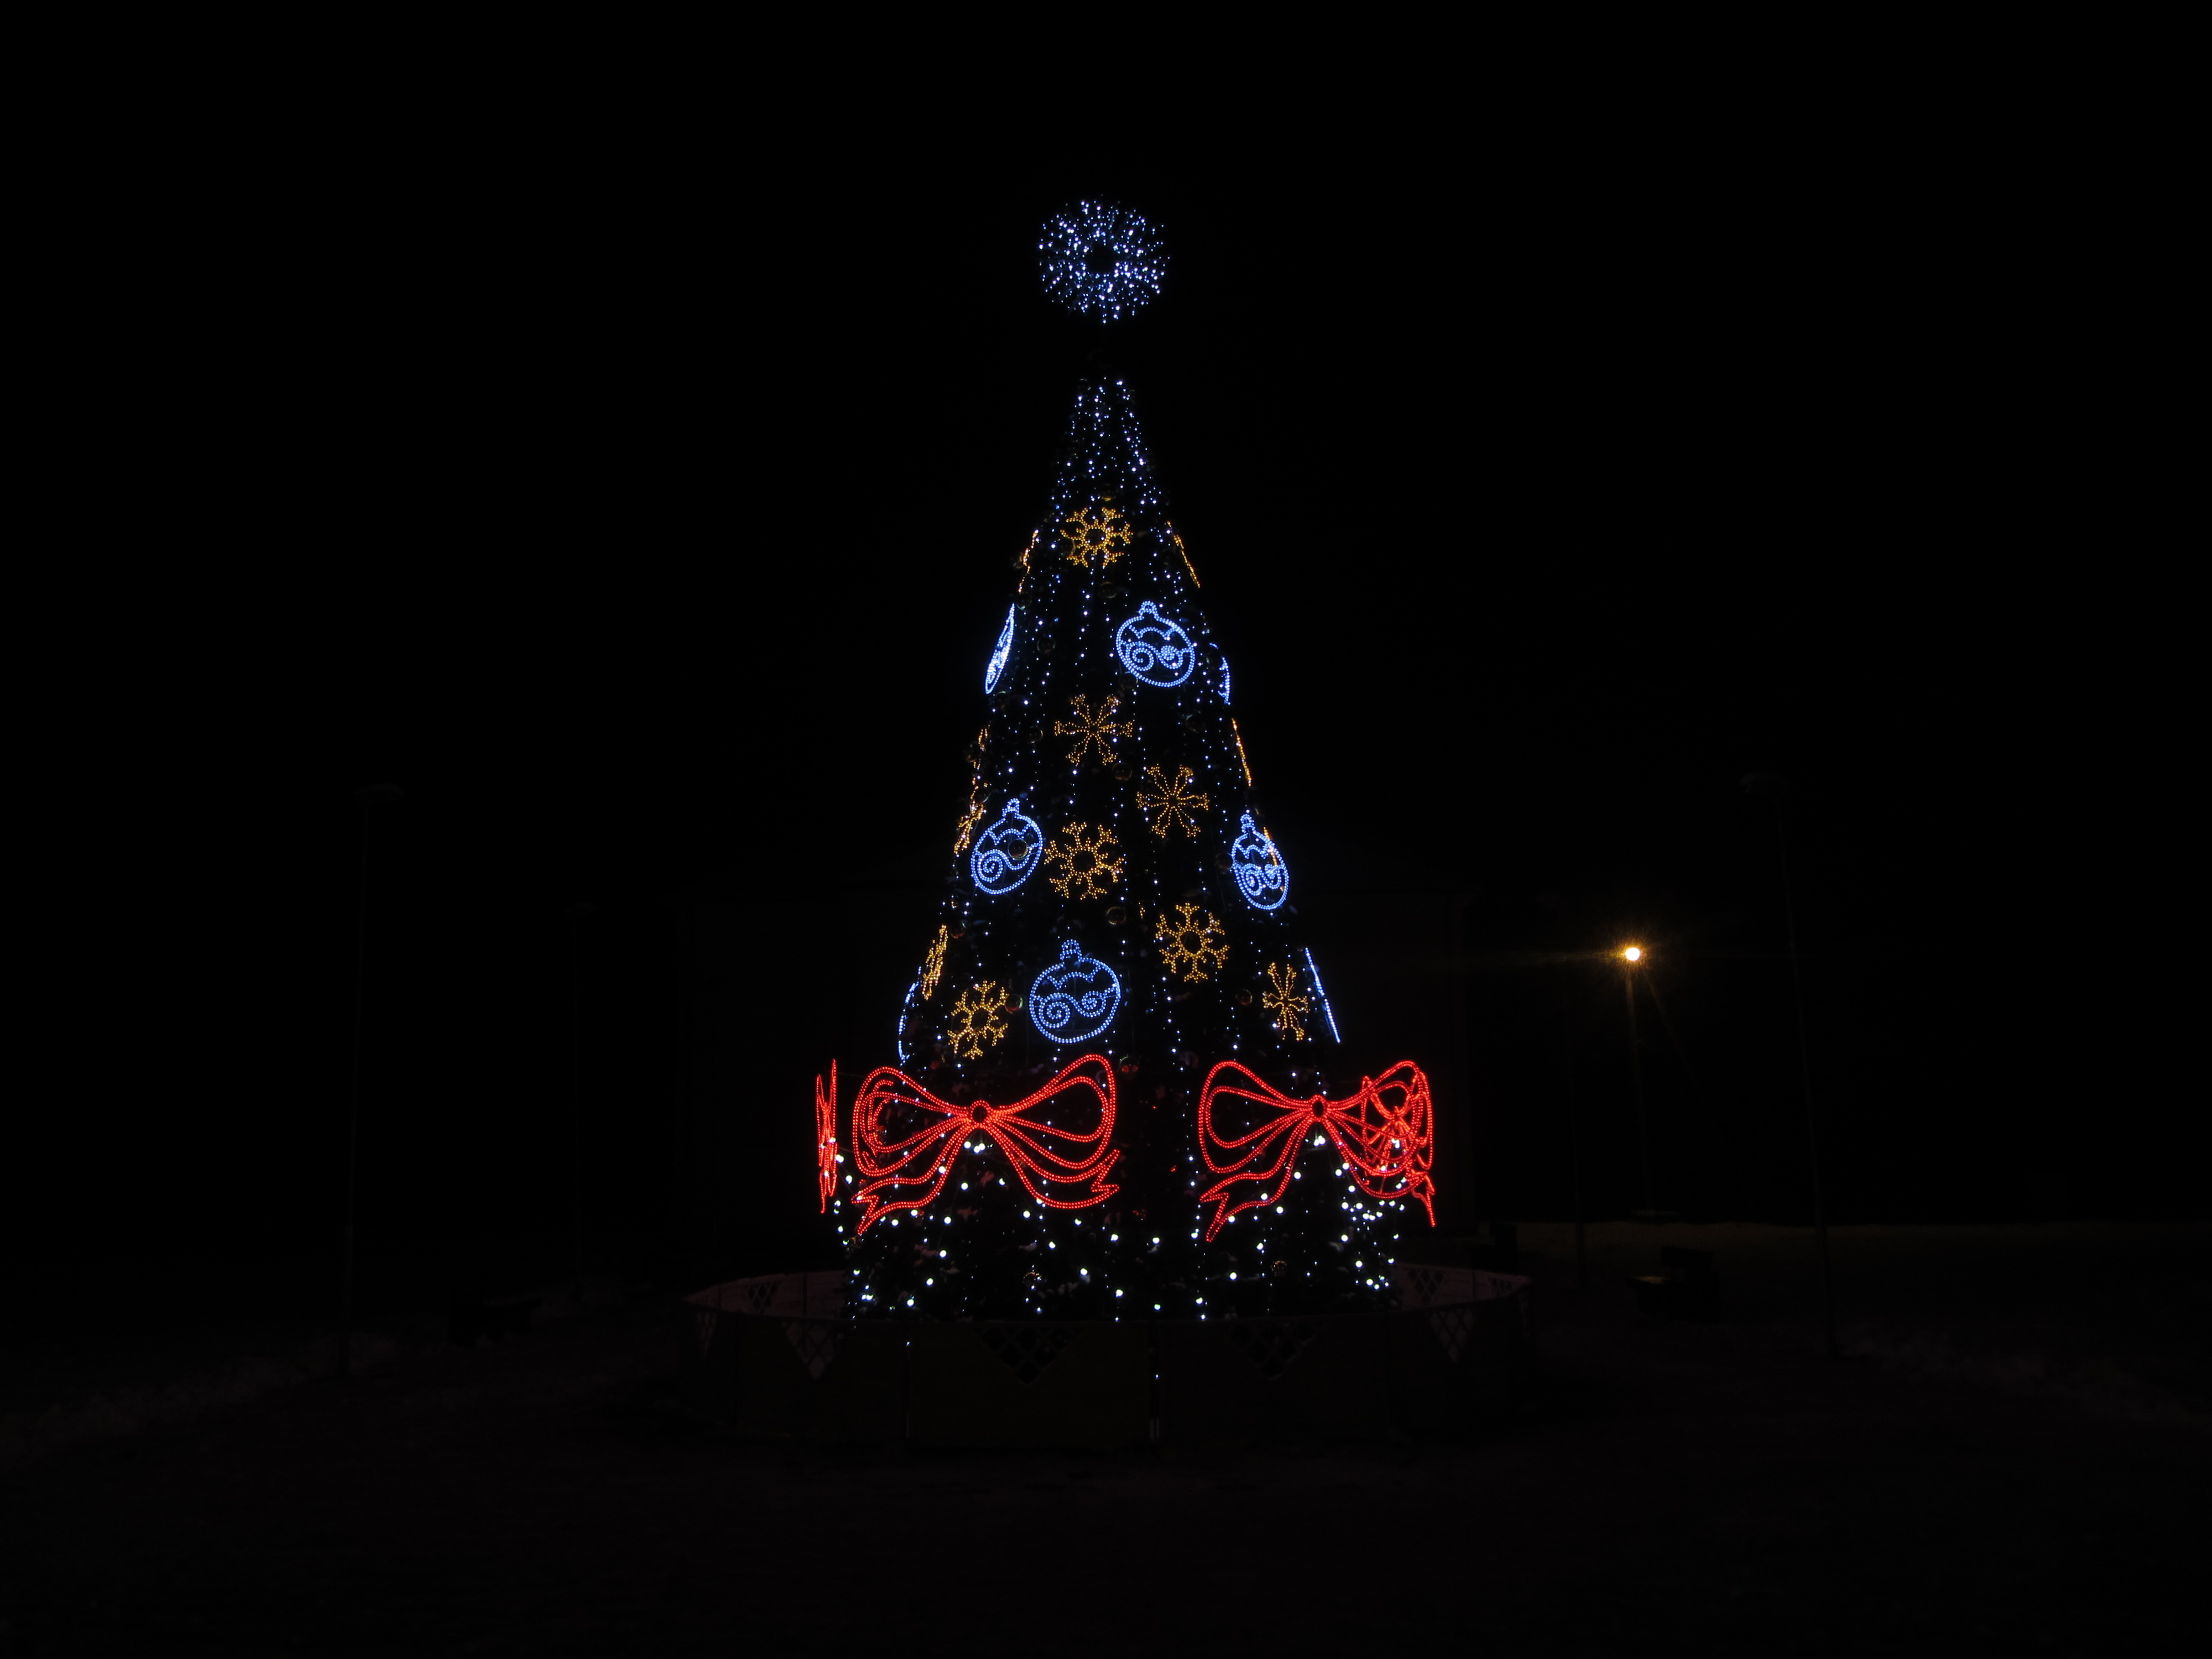 Baltoji Vokė Kalėdinės dekoracijos 2017 | vietoves.lt